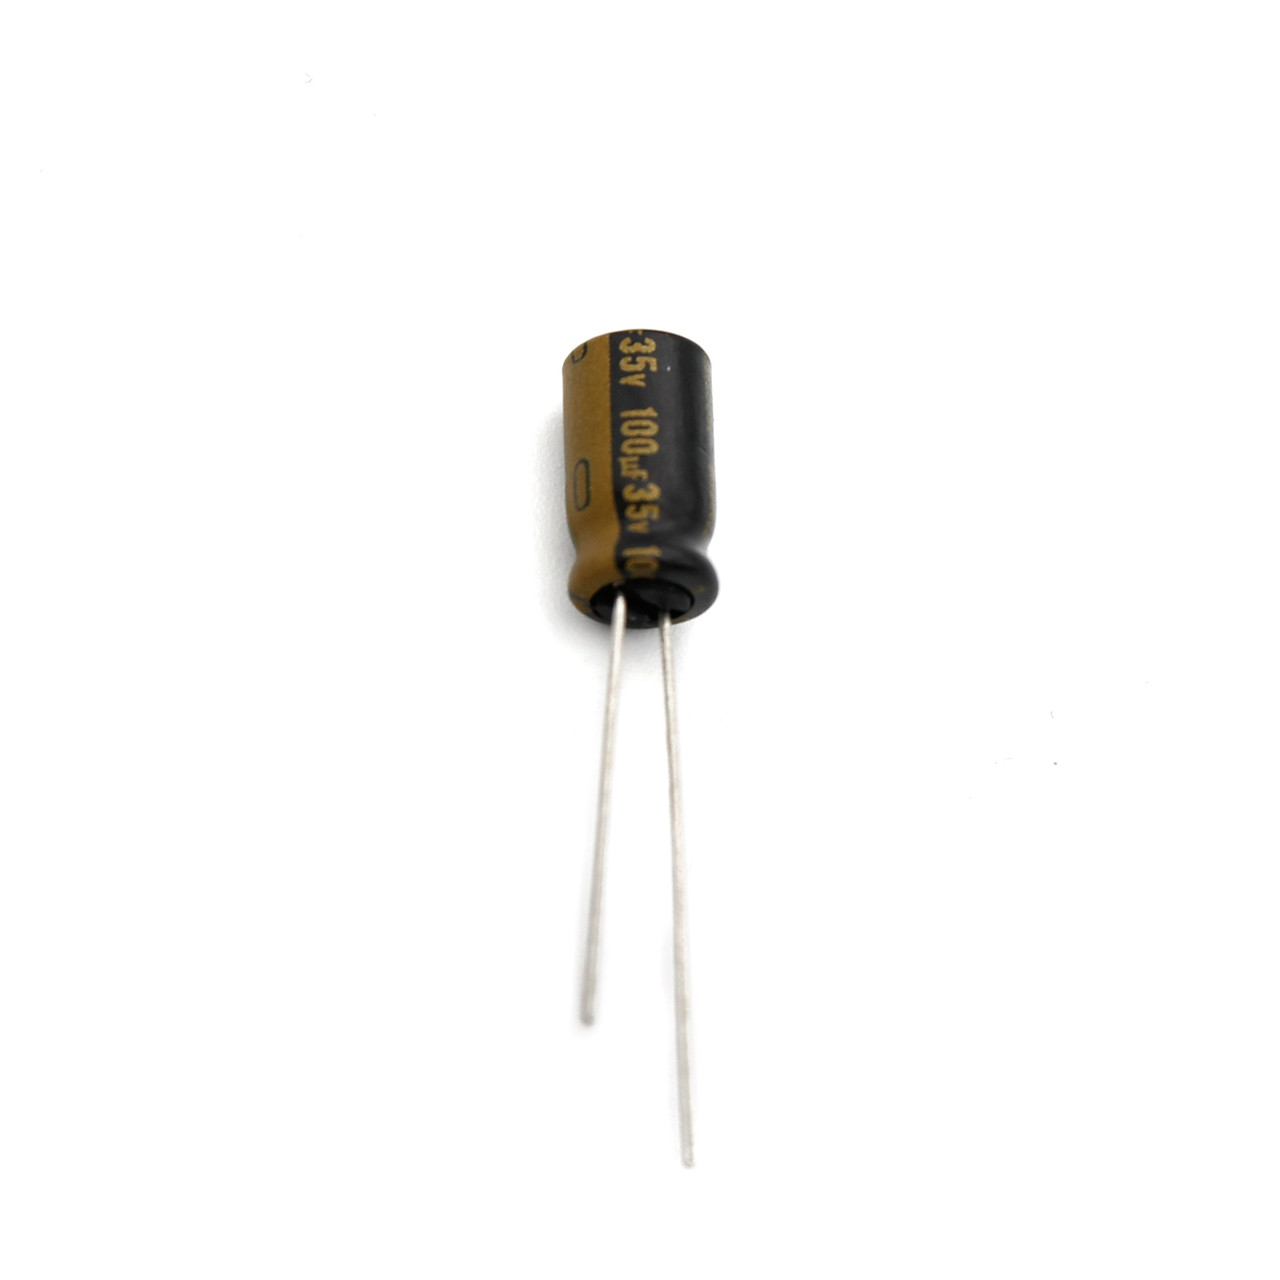 Aluminum Electrolytic Capacitor - Audio Grade - 10 pack